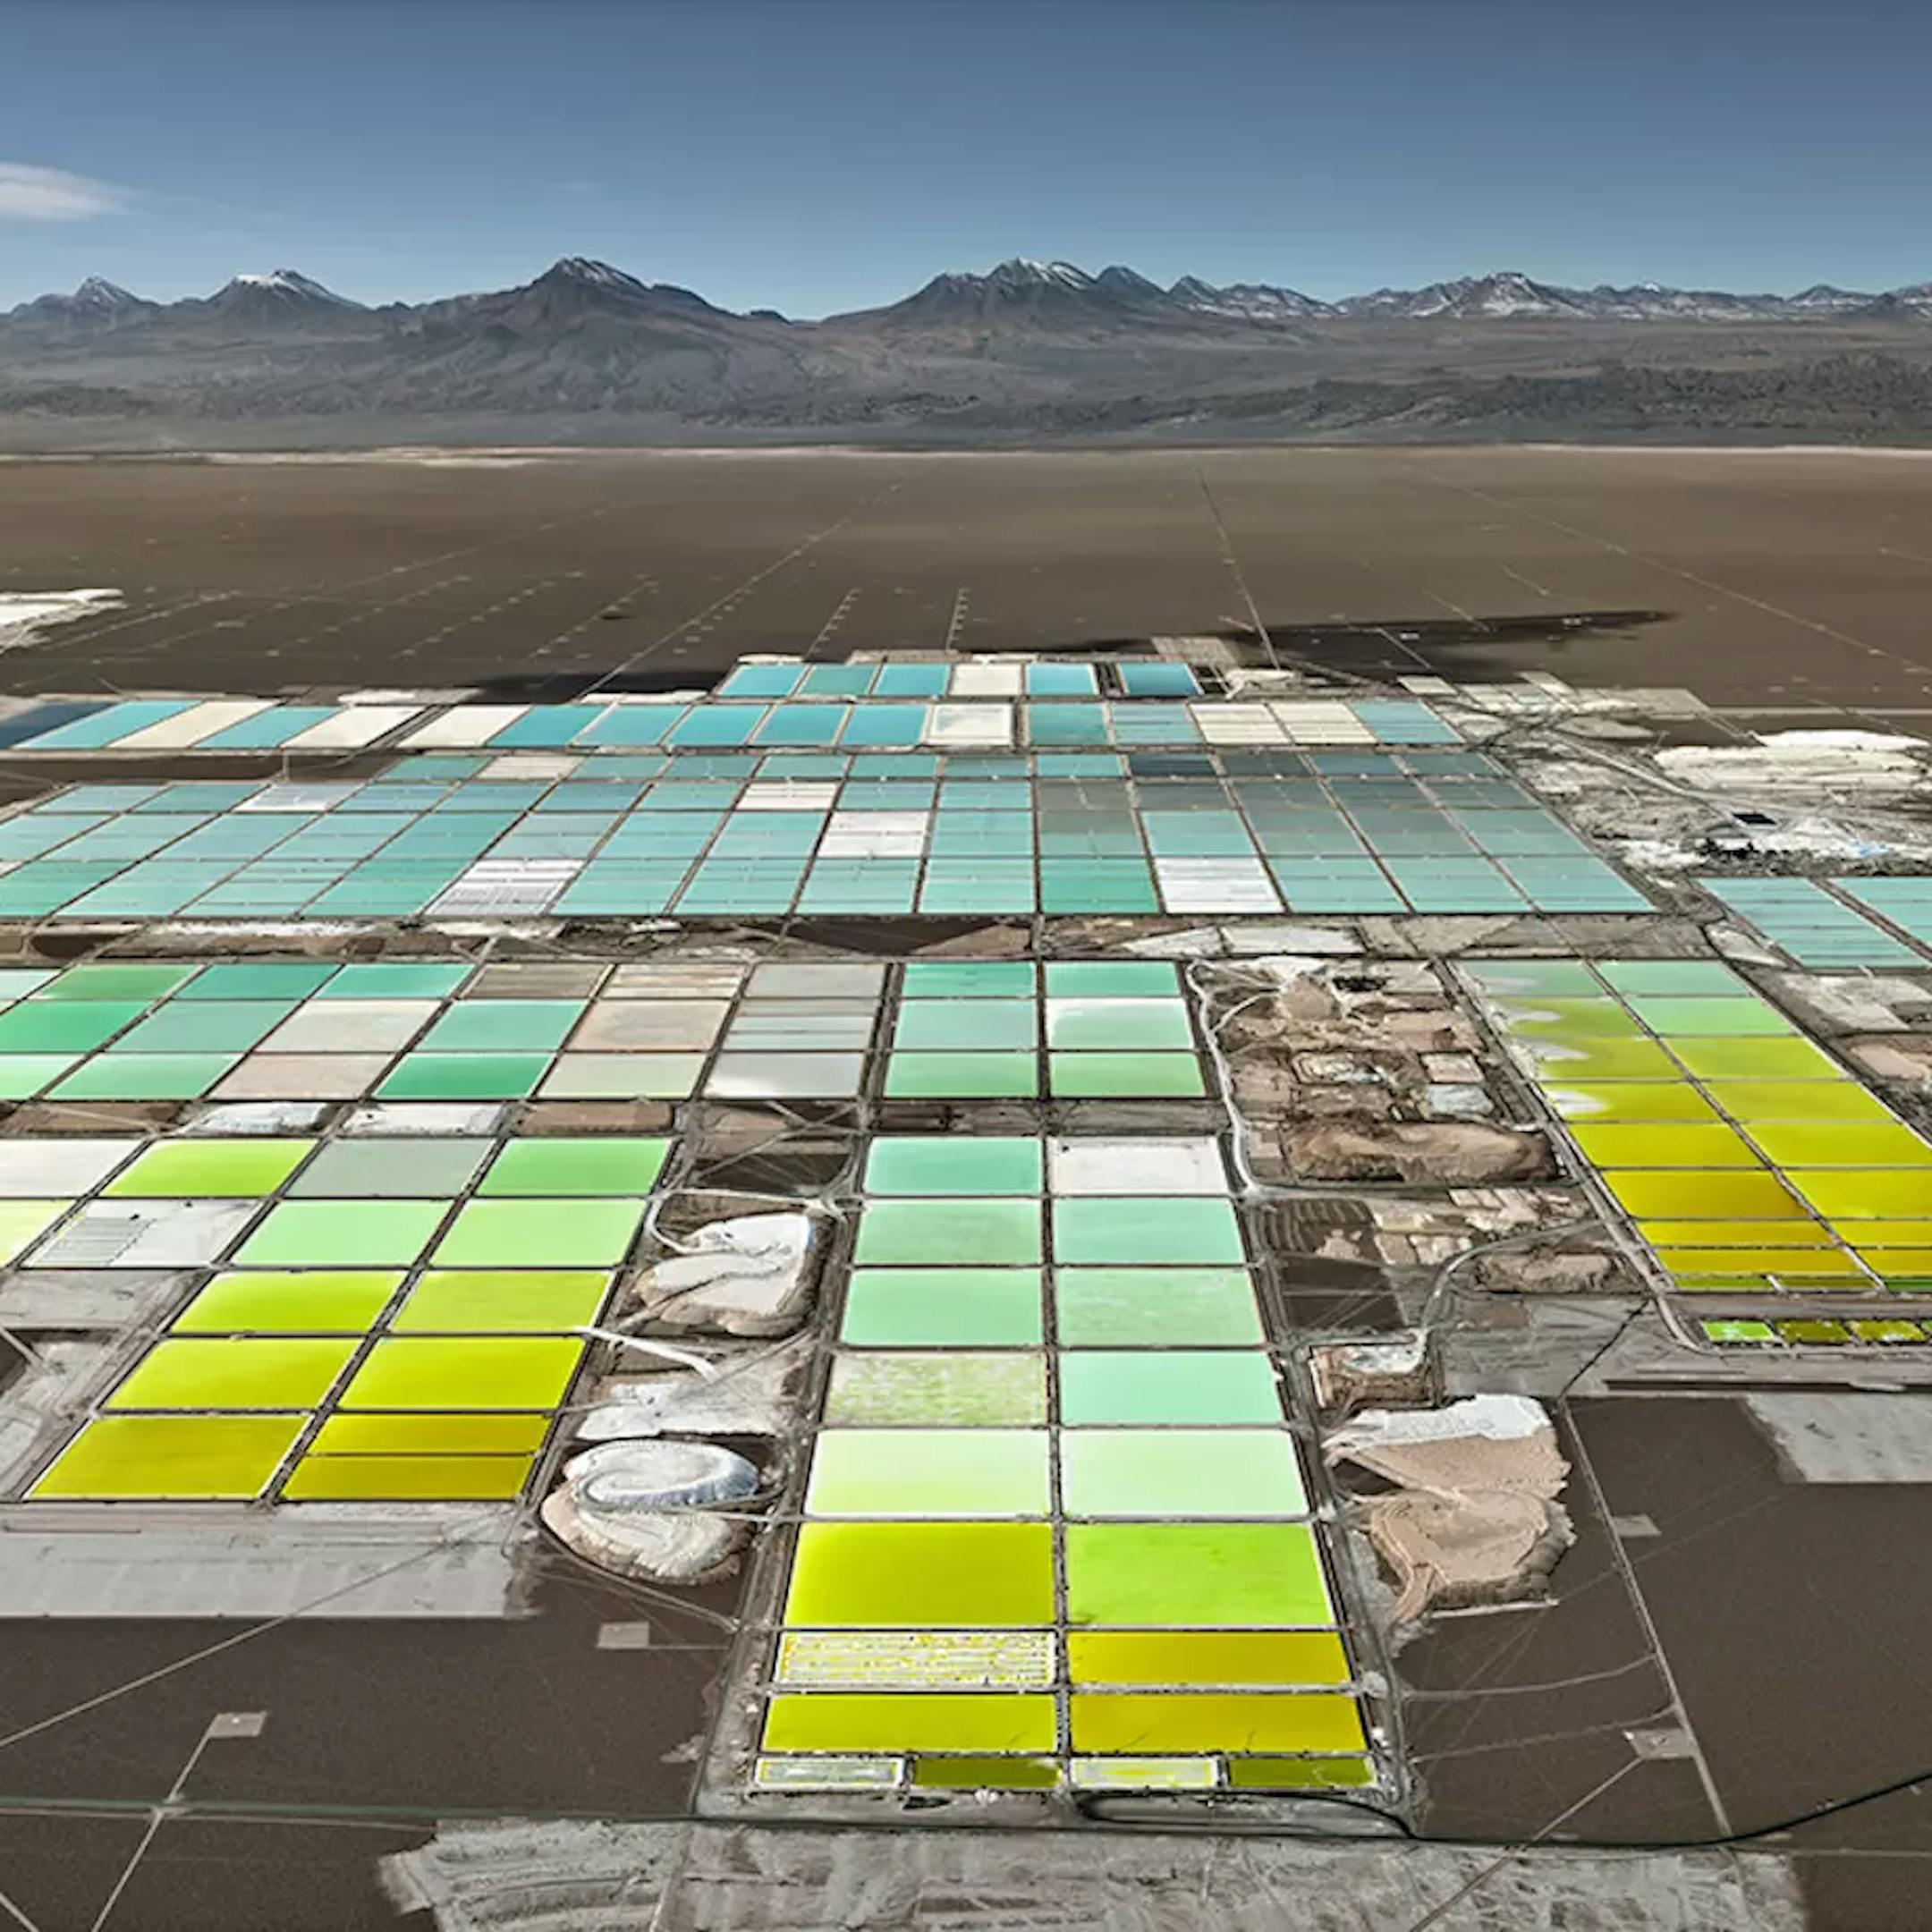 Lithium Mines #1, Salt Flats, Atacama Desert, Chile, 2017 